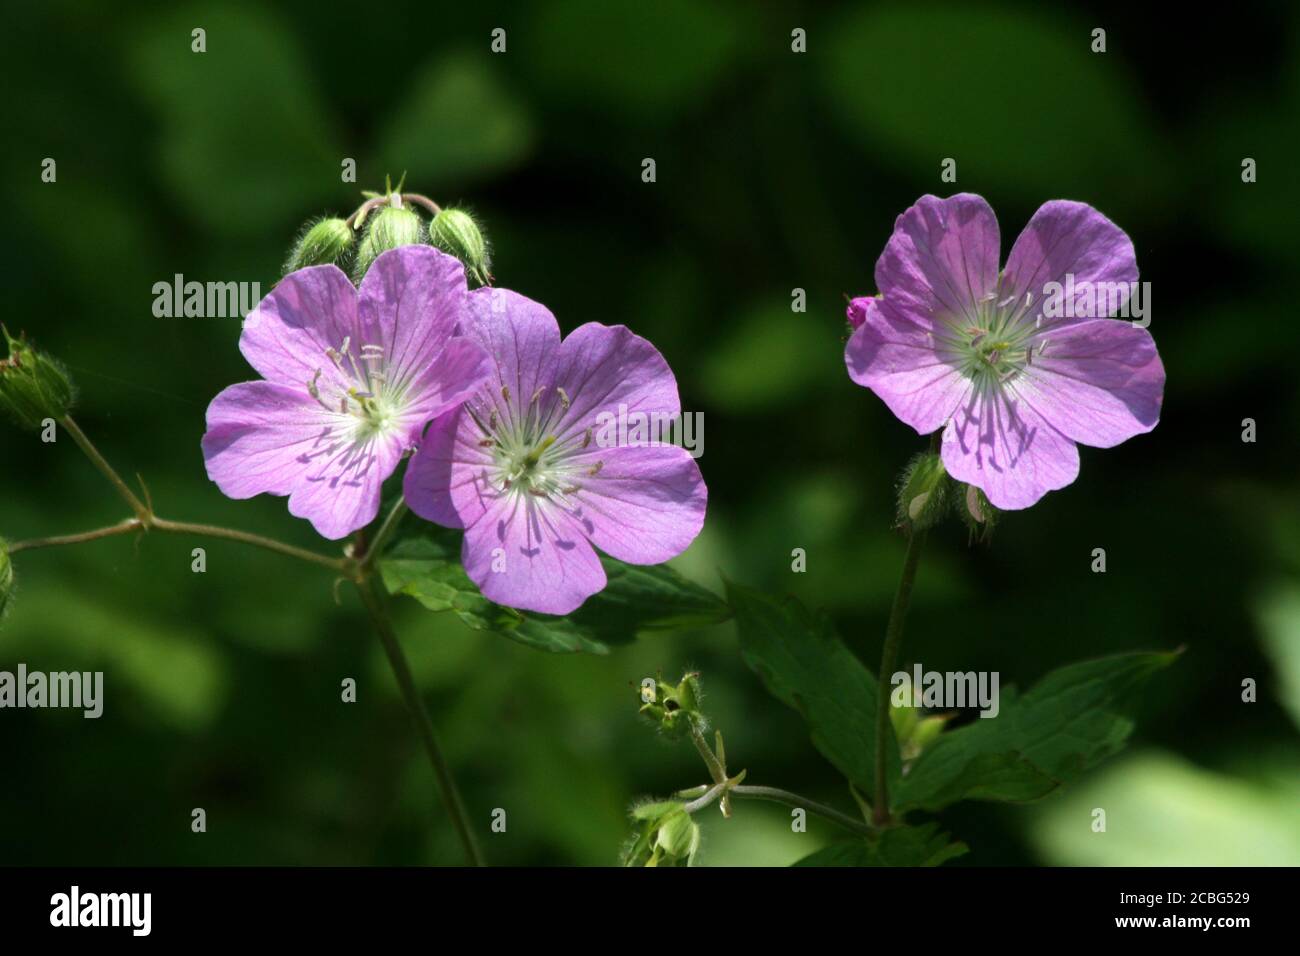 Wild geranium (Geranium maculatum) in bloom Stock Photo